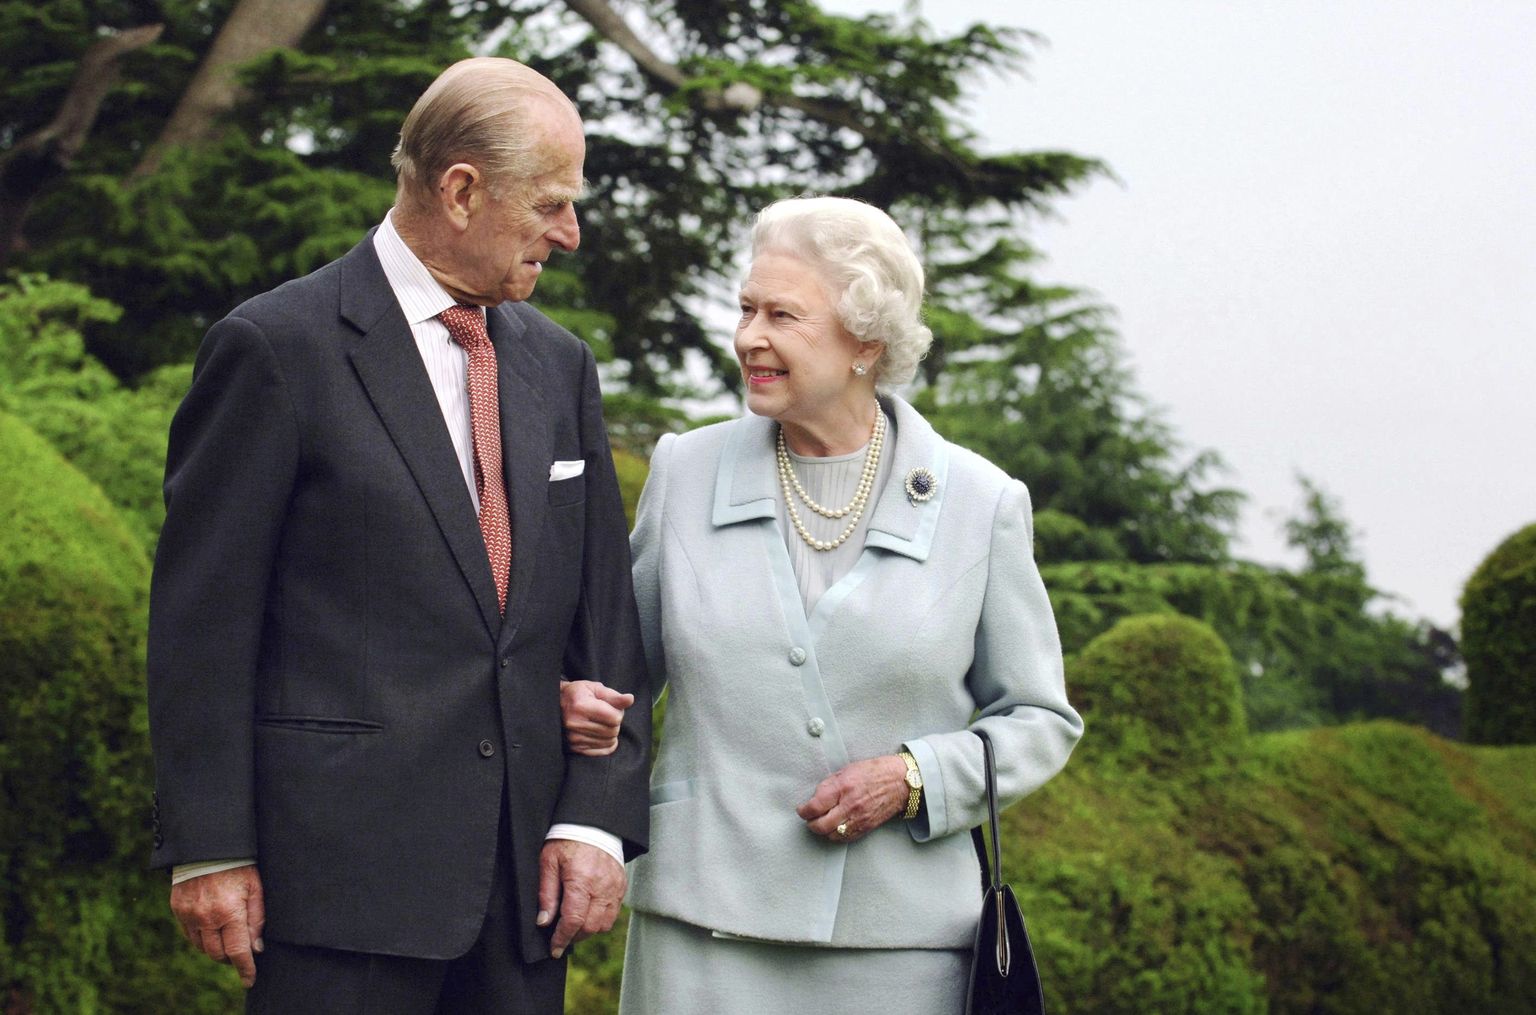 Briti kuninganna Elizabeth II ja ta abikaasa prints Philip 2017. aasta fotol. Kuninganna vasakus käes on näha sõrmuseid